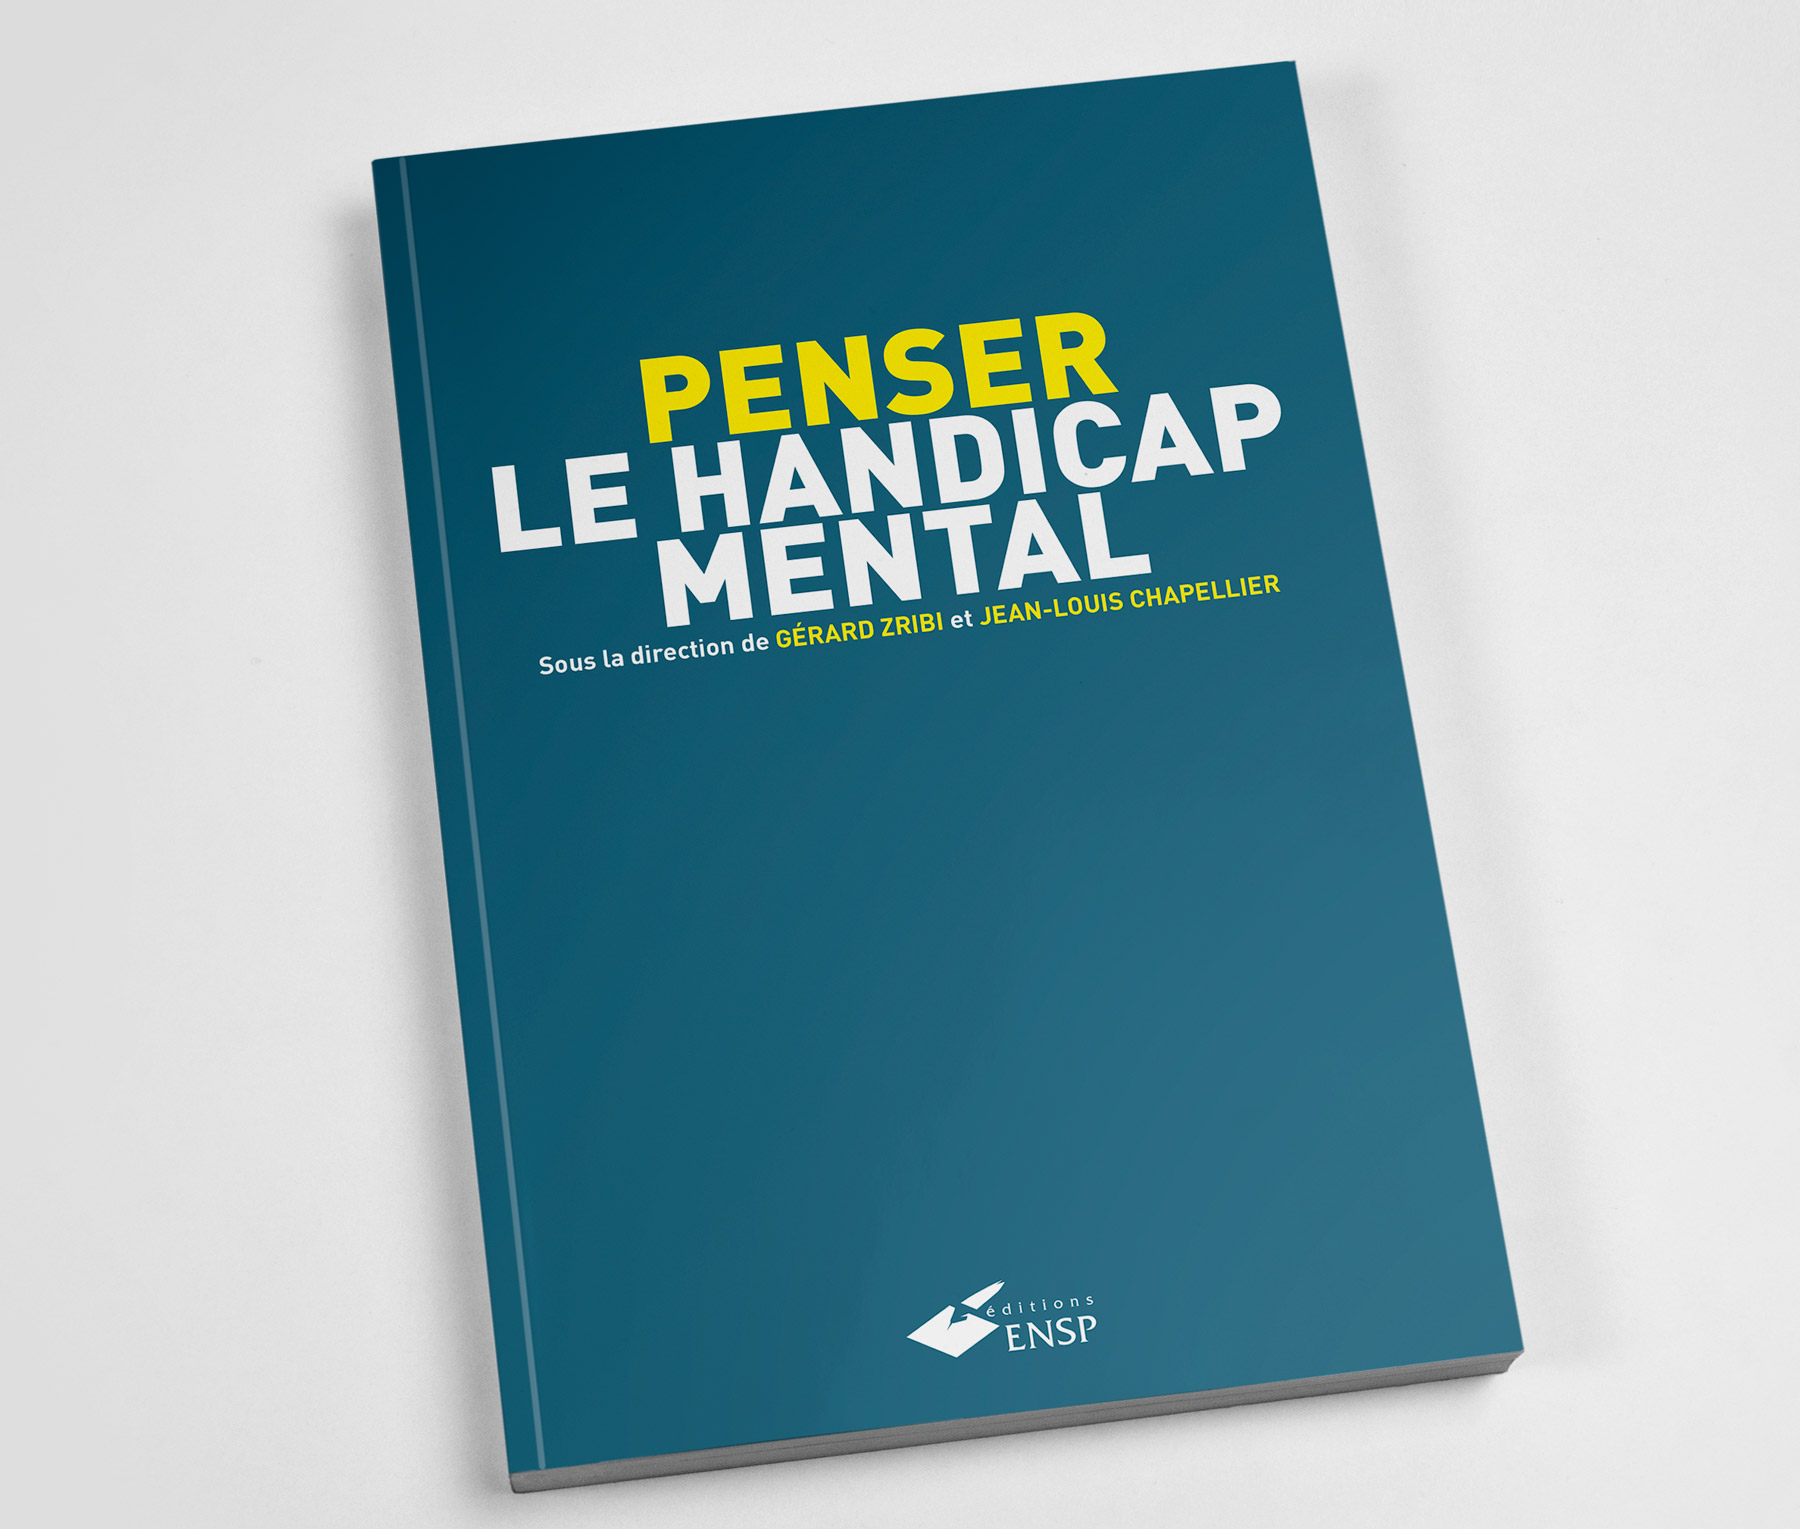 Publication Penser le handicap mental par Gérard Zribi et jean-Louis Chapellier